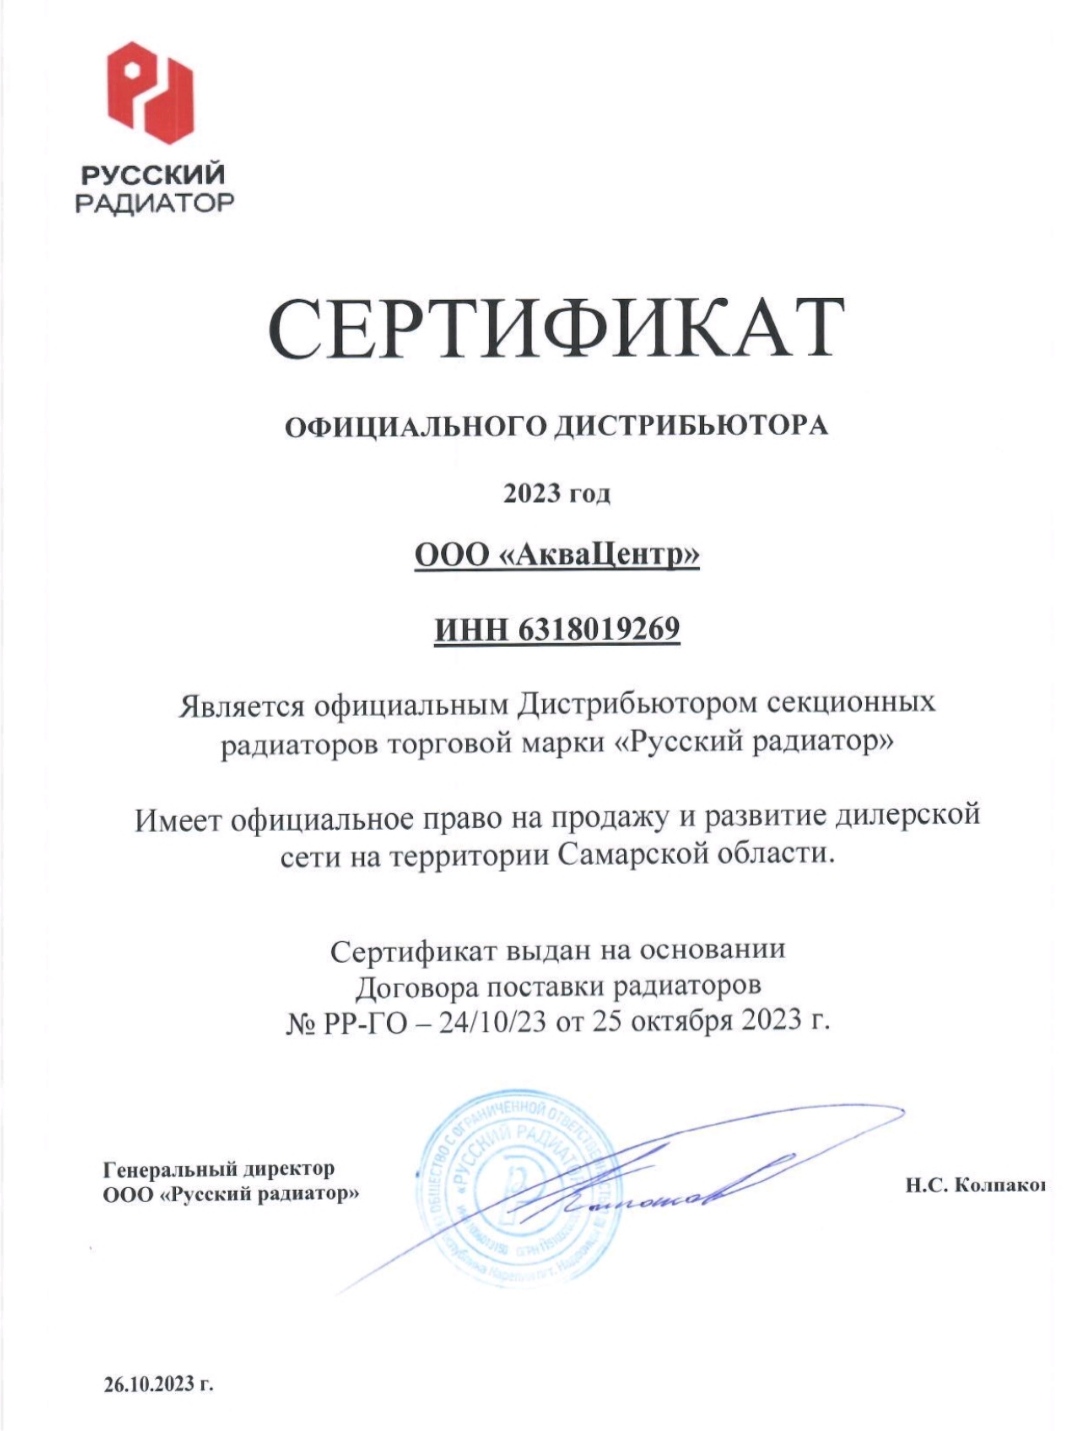 Сертификат официального дистрибьютора радиаторов Русский Радиатор в Самаре и области